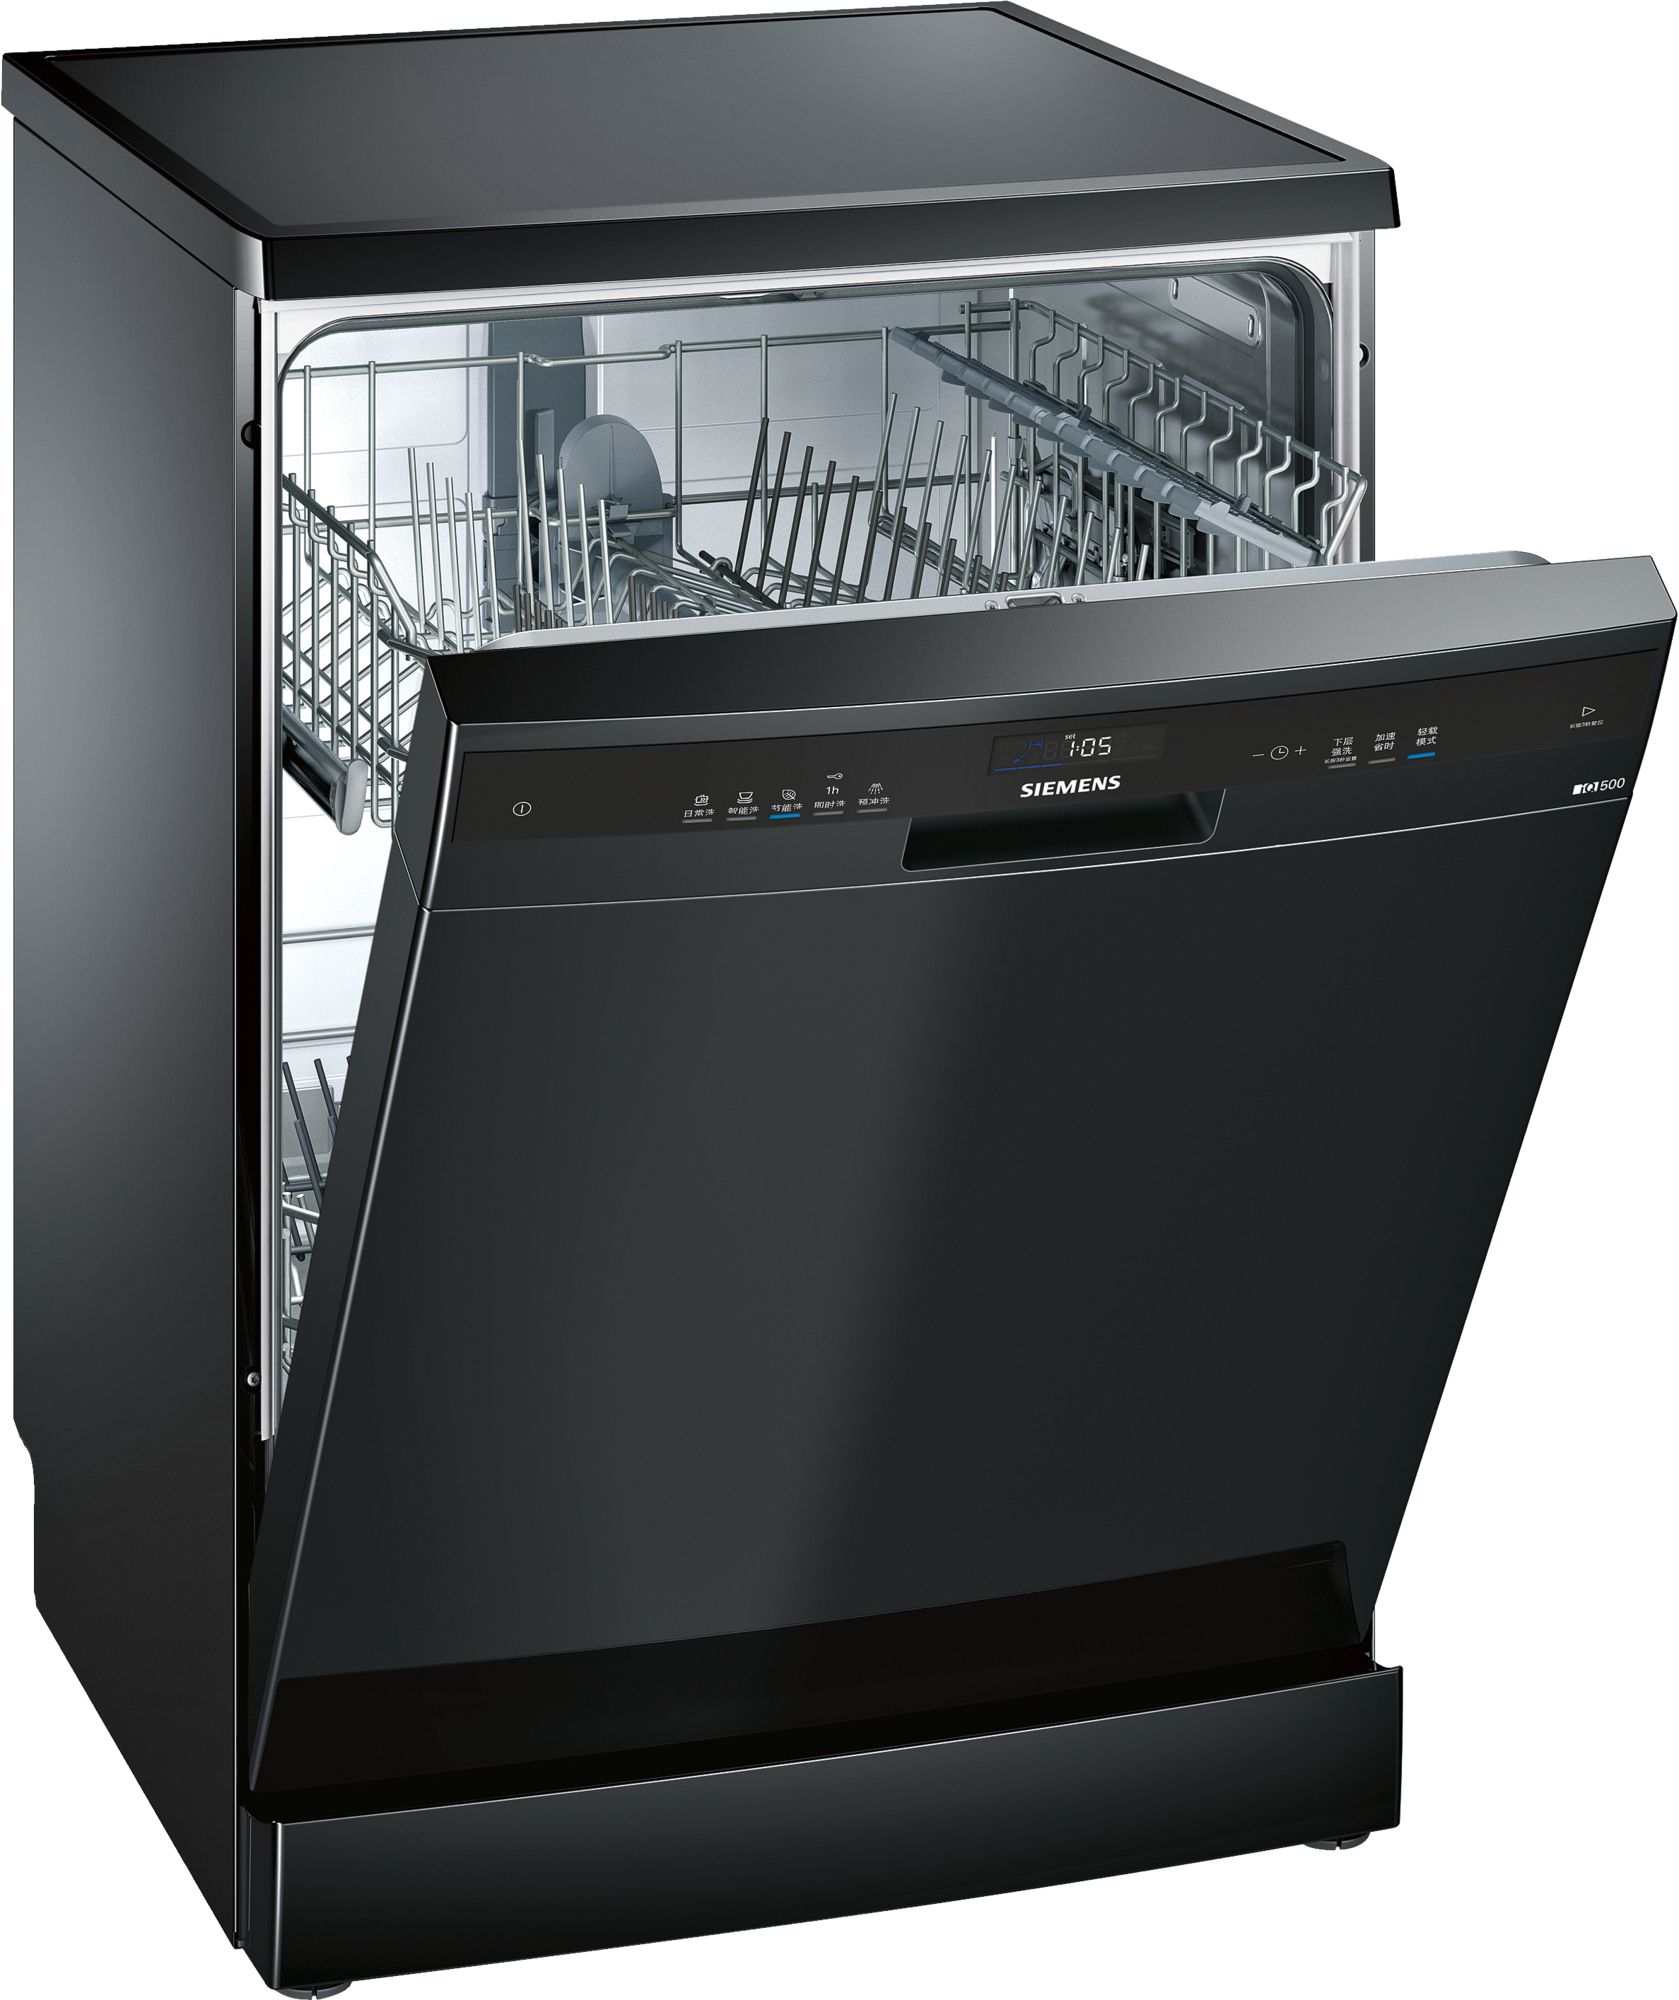 限地区 SIEMENS 西门子 SJ235B01JC 可独可嵌式不锈钢洗碗机 13套 ￥4399史低